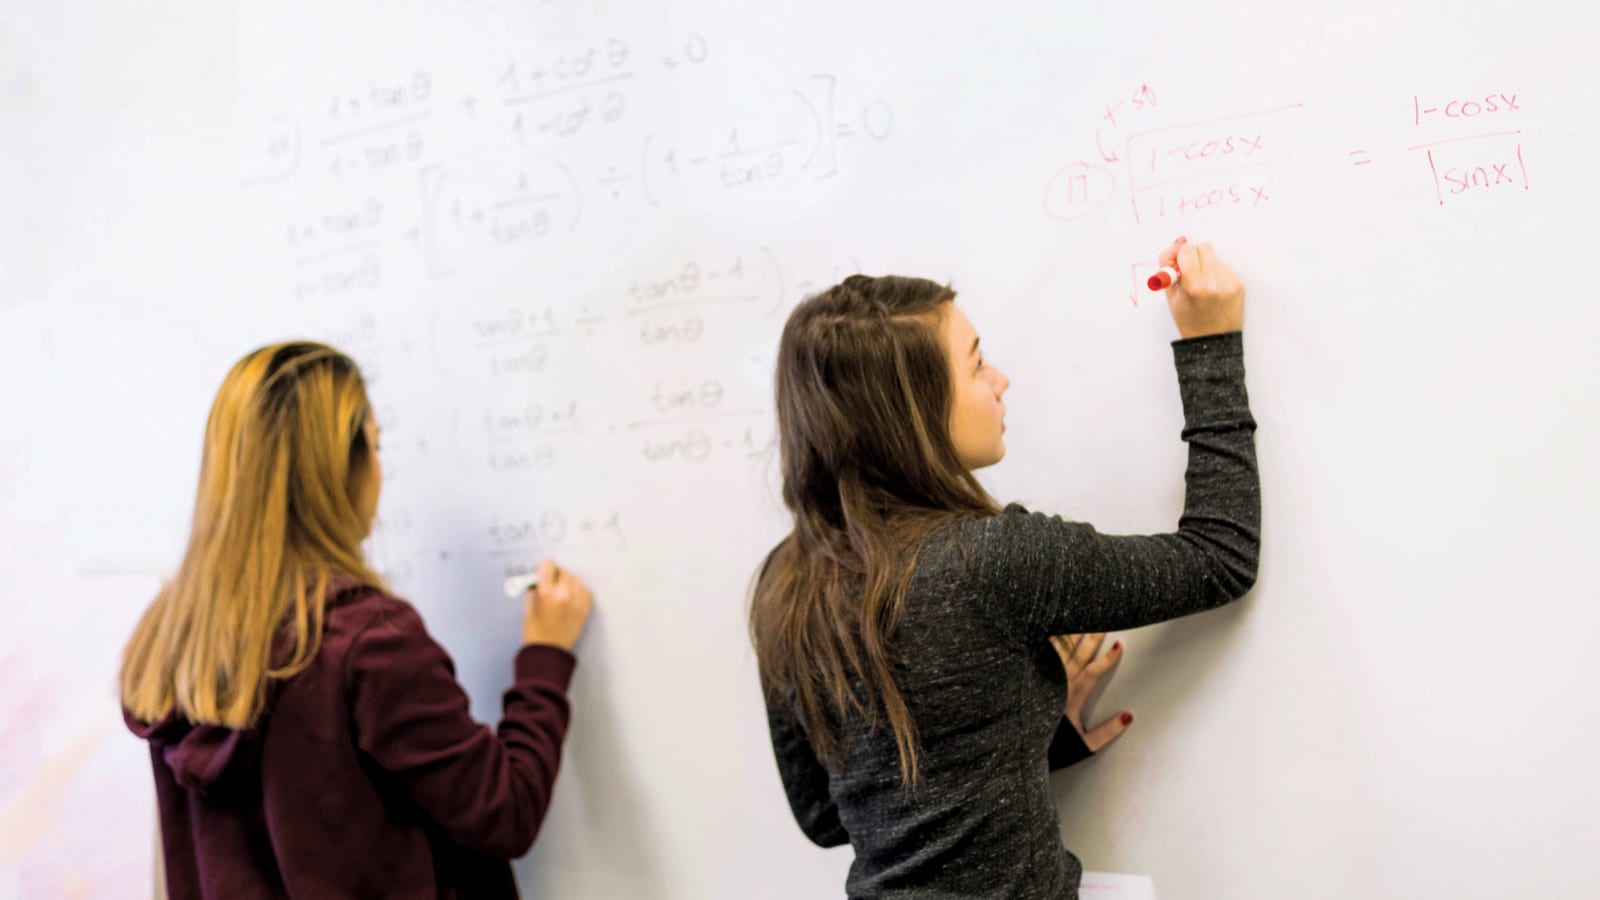 Girls at math whiteboard in class